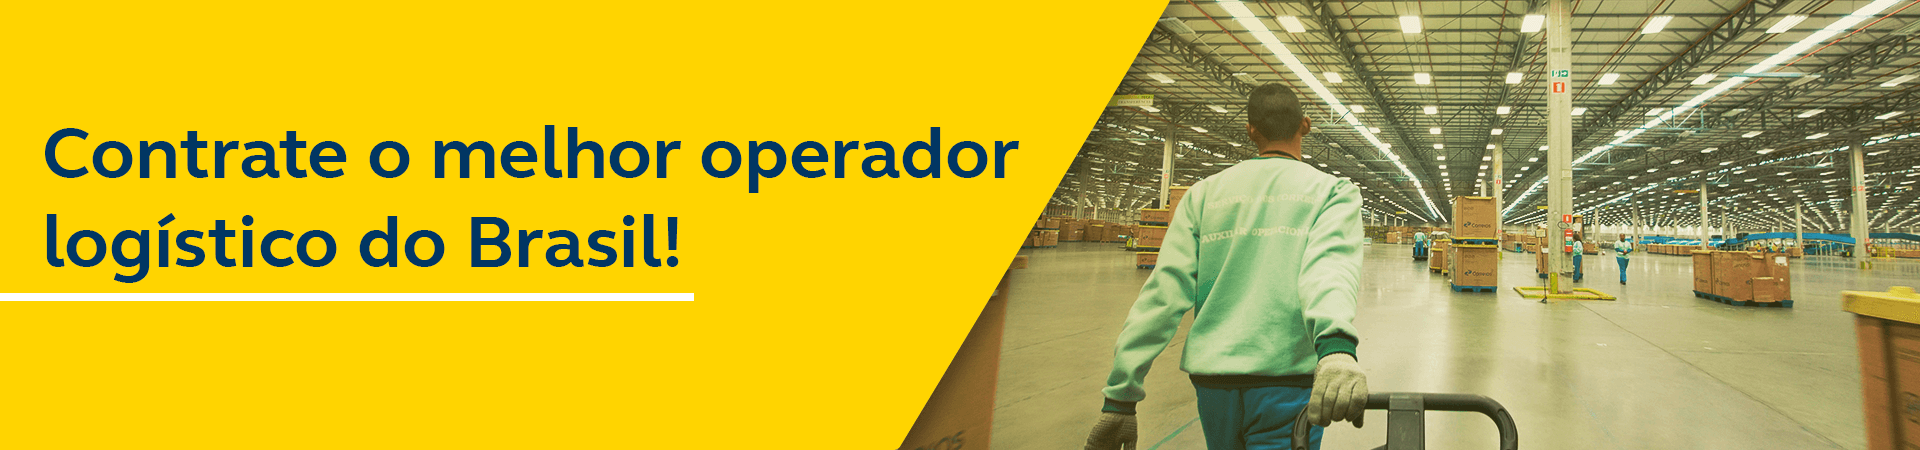 Banner - Contrate o melhor operador logístico do Brasil! - Homem puxando carretinha com encomendas